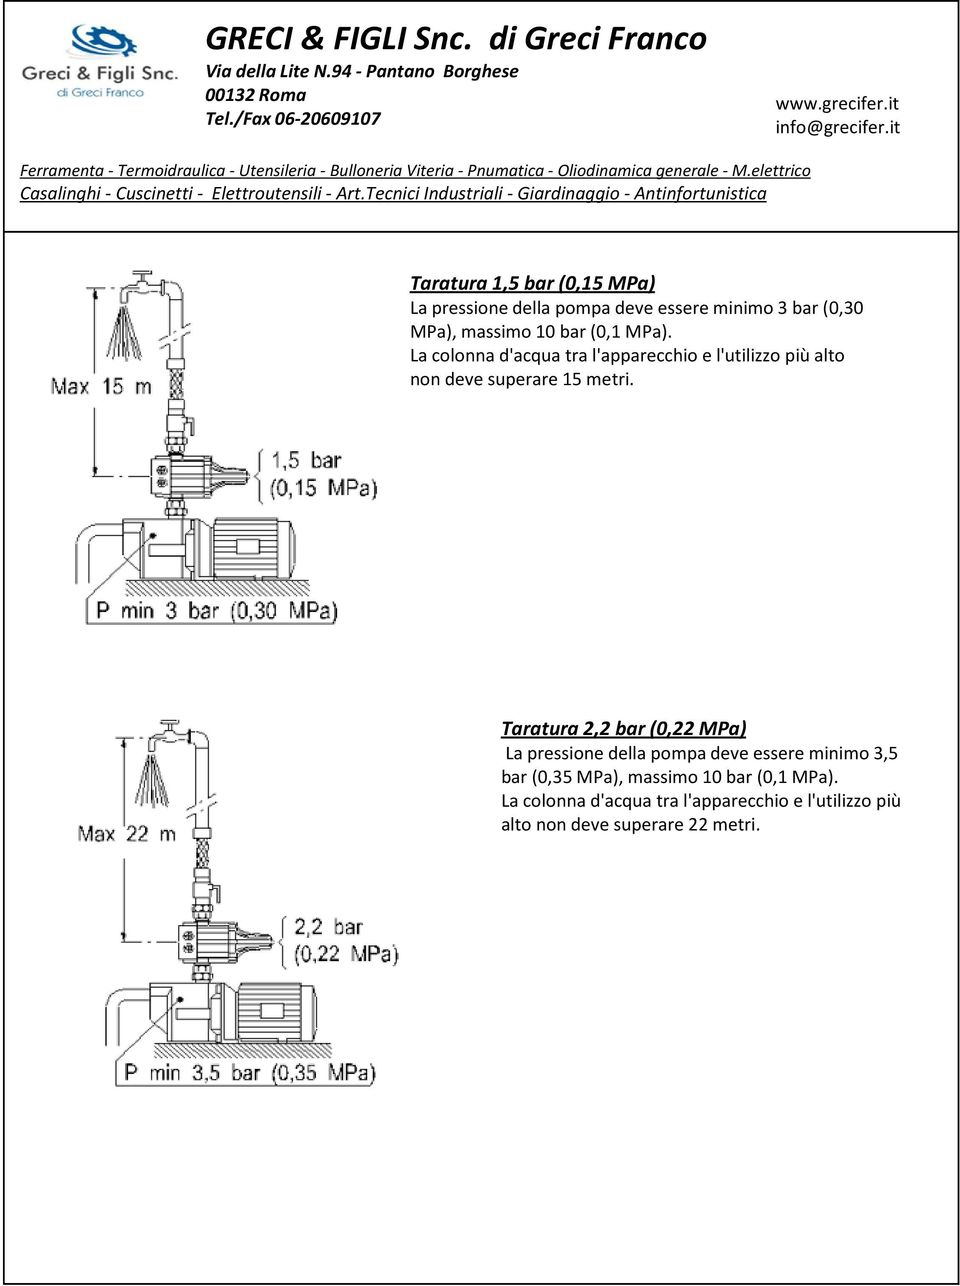 Ɍ Taratura 2,2 bar (0,22 MPa) La pressione della pompa deve essere minimo 3,5 bar (0,35 MPa), massimo